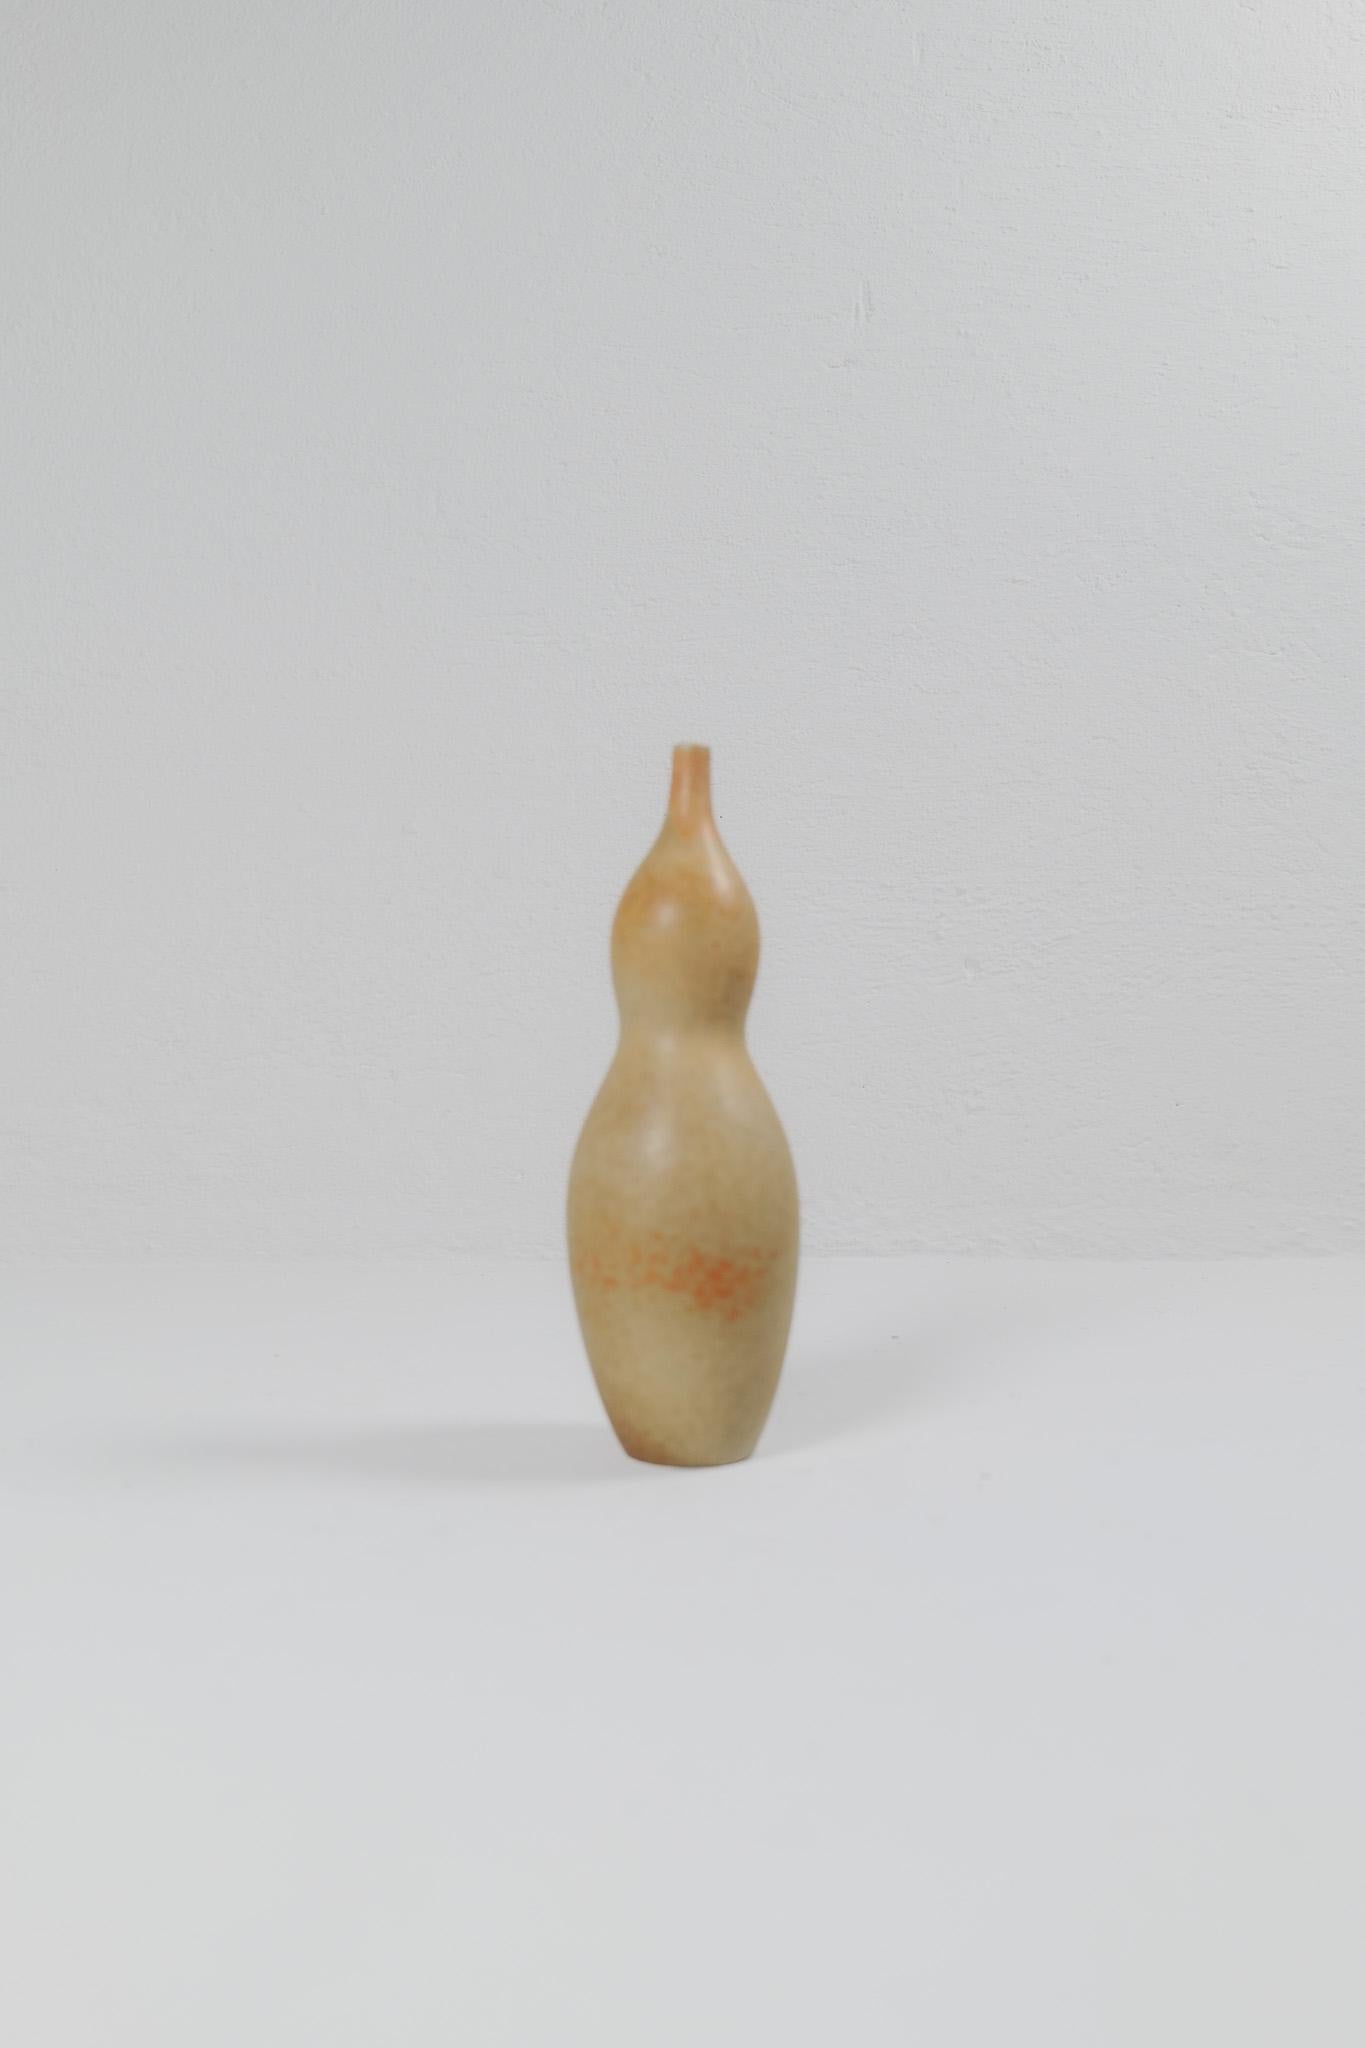 Ce vase unique fait partie d'une série de vases produits en 1948 sous le nom de 